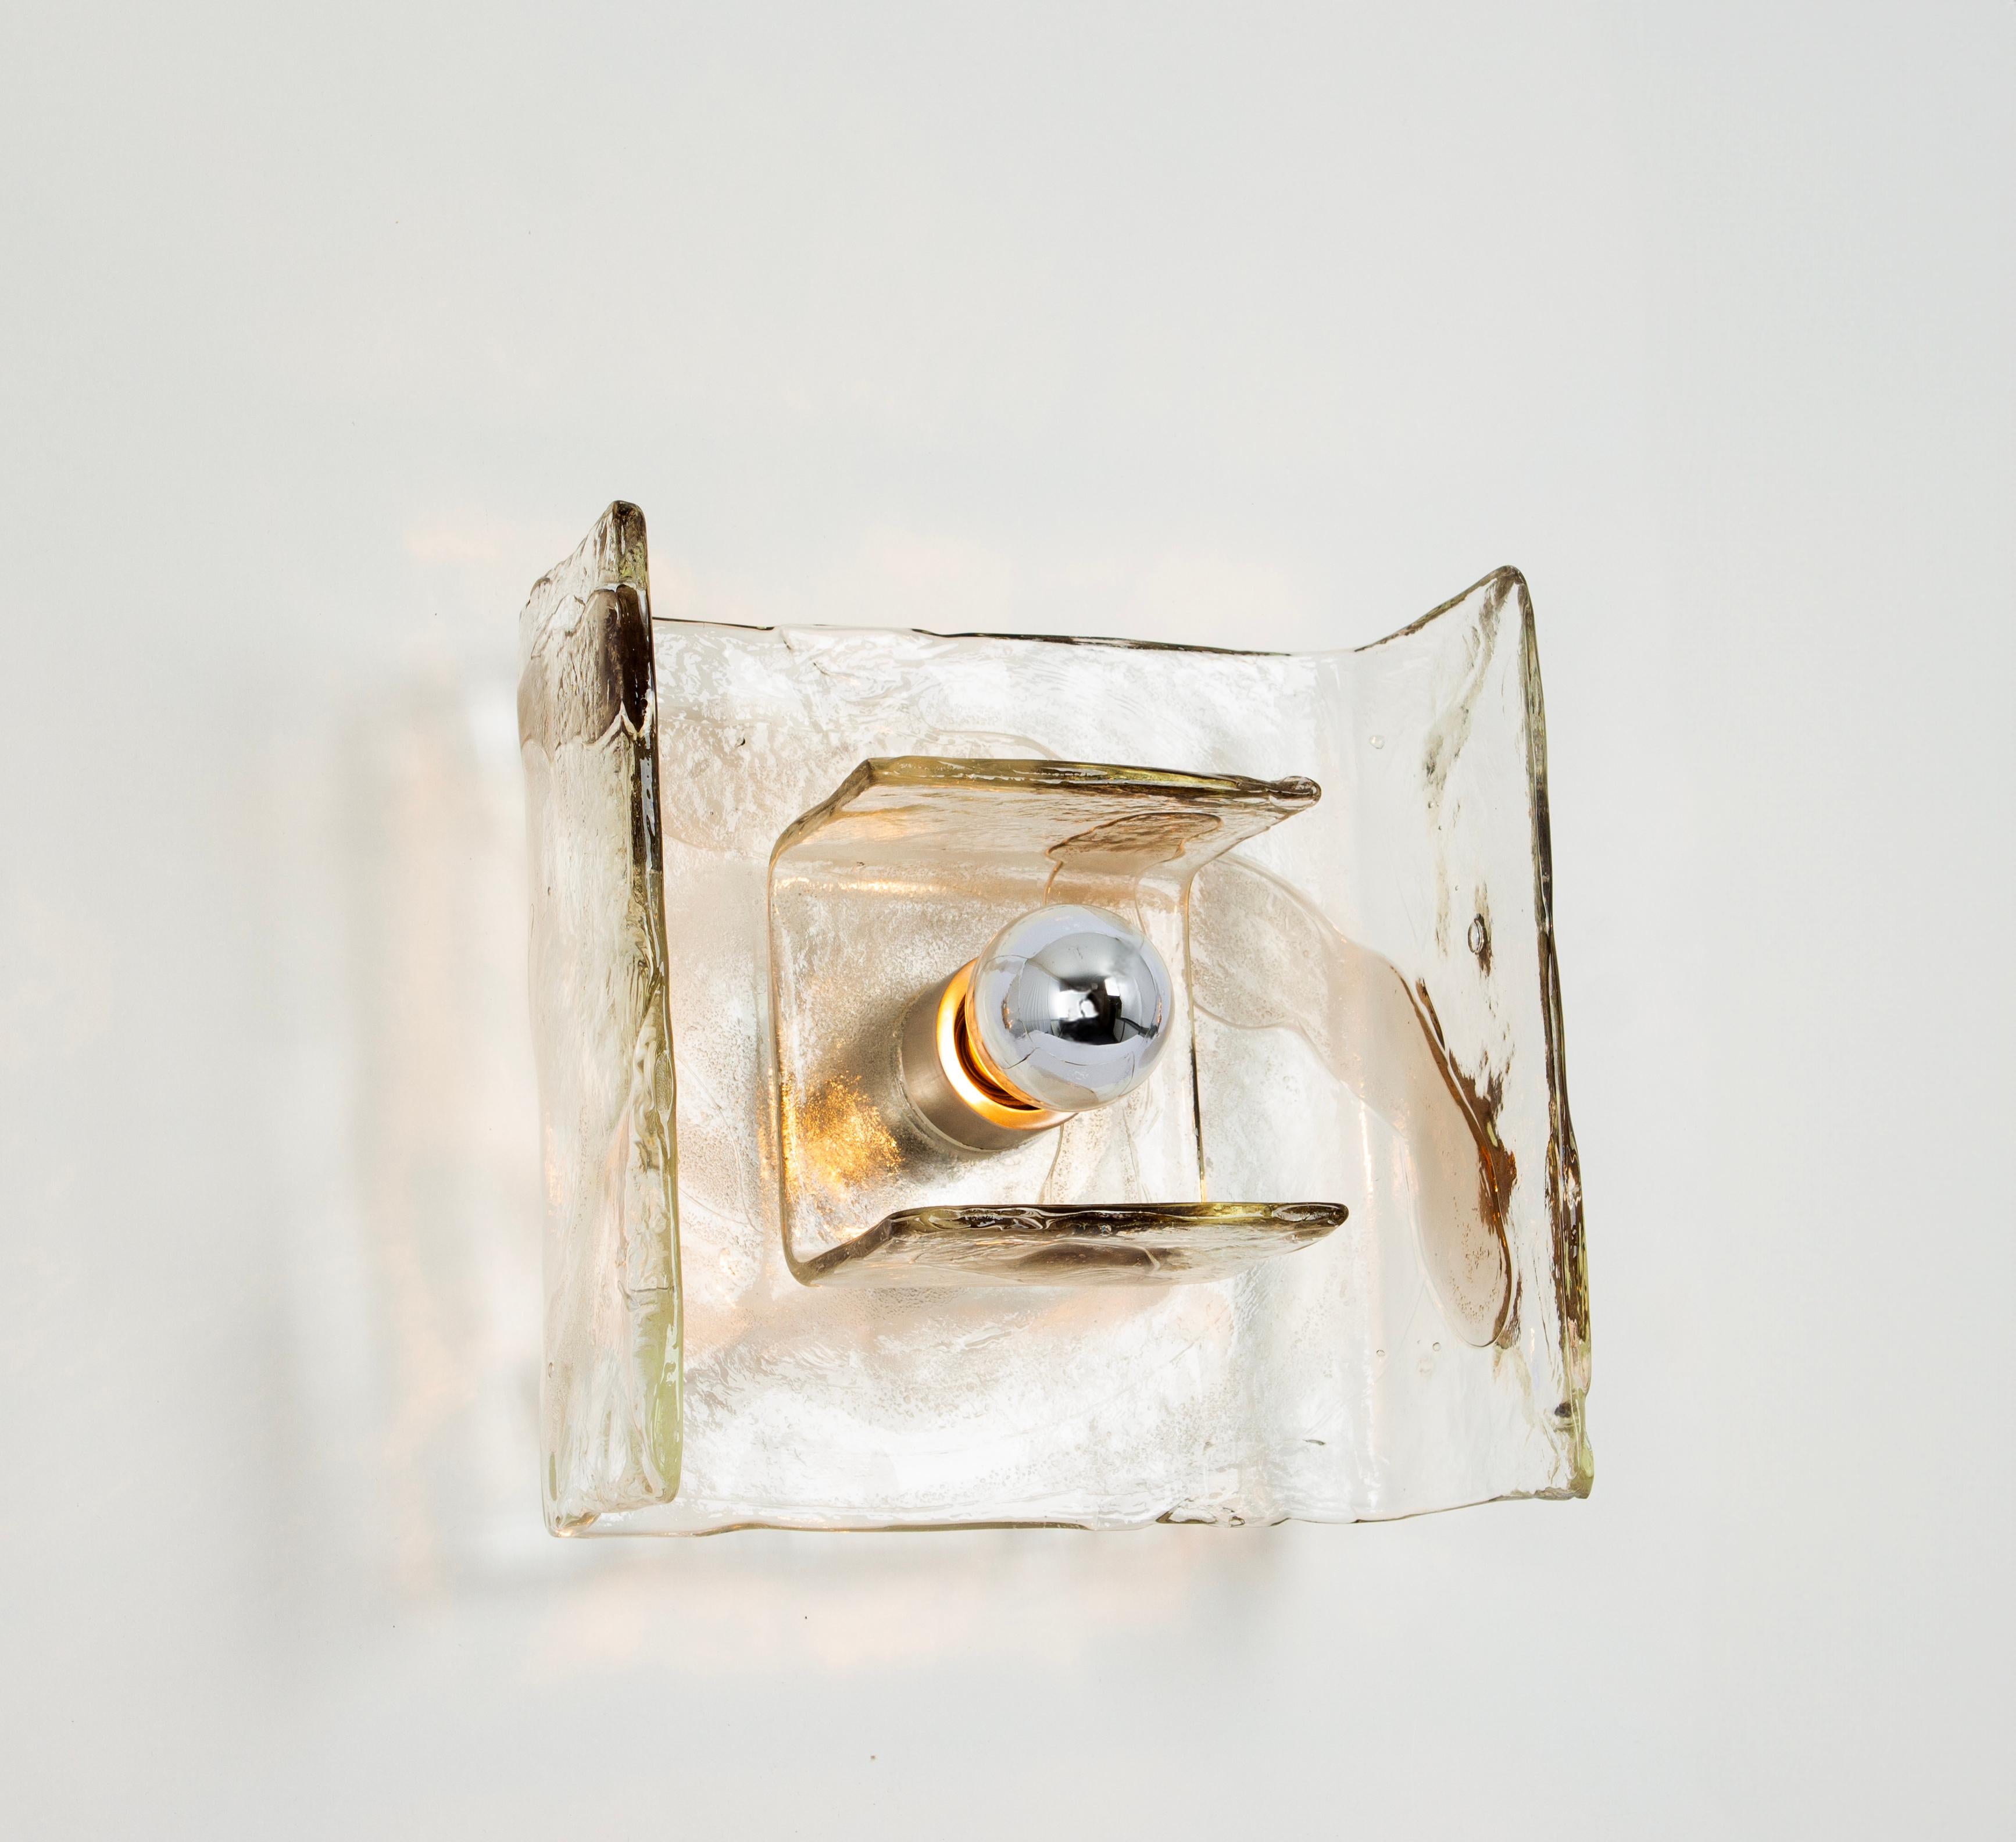 Wunderschöner Wandleuchter aus der Mitte des Jahrhunderts mit einem großen Murano-Glasstück, entworfen von Carlo Nason für Kalmar, Österreich, hergestellt um 1960-1969.

Die Leuchte benötigt 1 x E27 Standardbirnen.
Glühbirnen sind nicht enthalten.